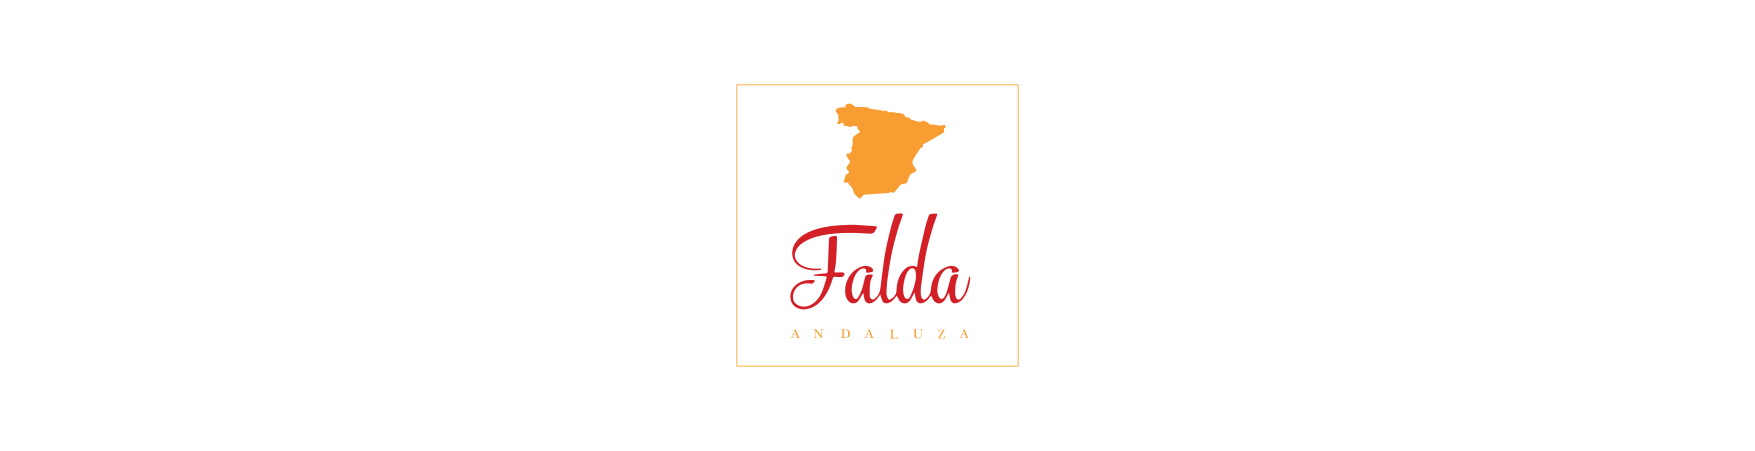 Falda Andaluza